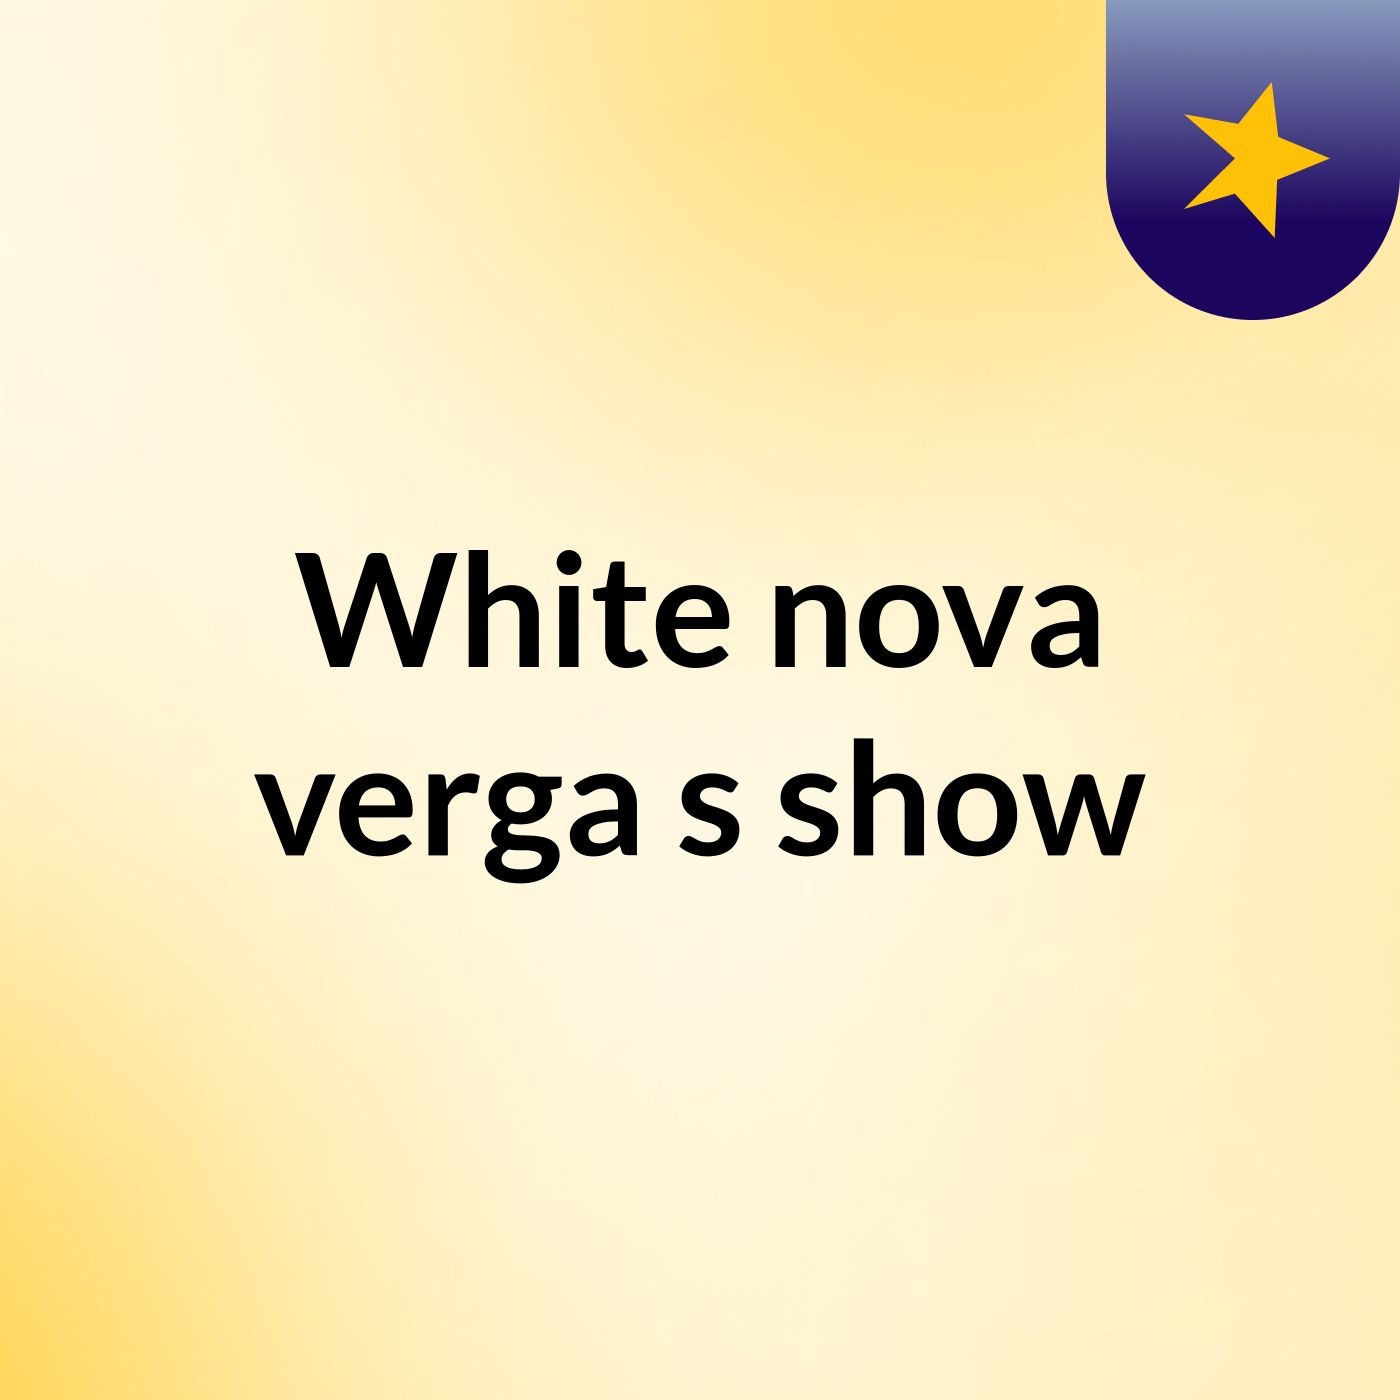 White nova verga's show